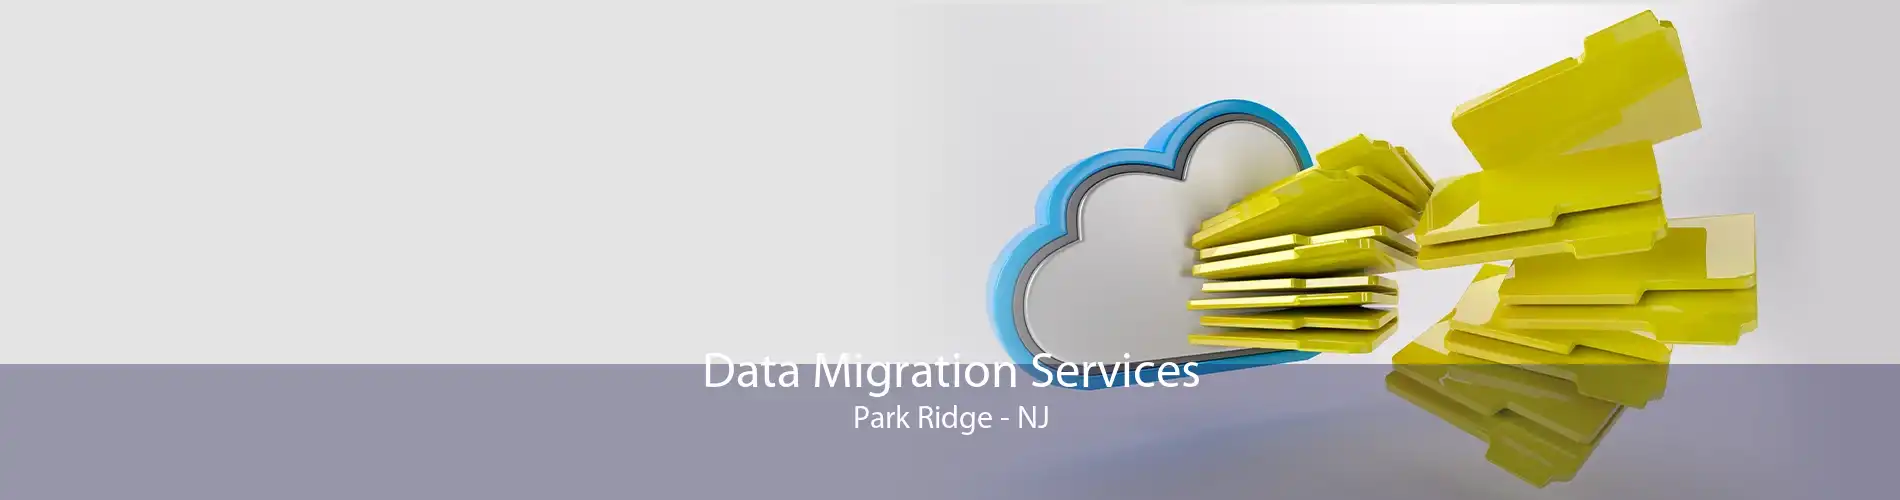 Data Migration Services Park Ridge - NJ